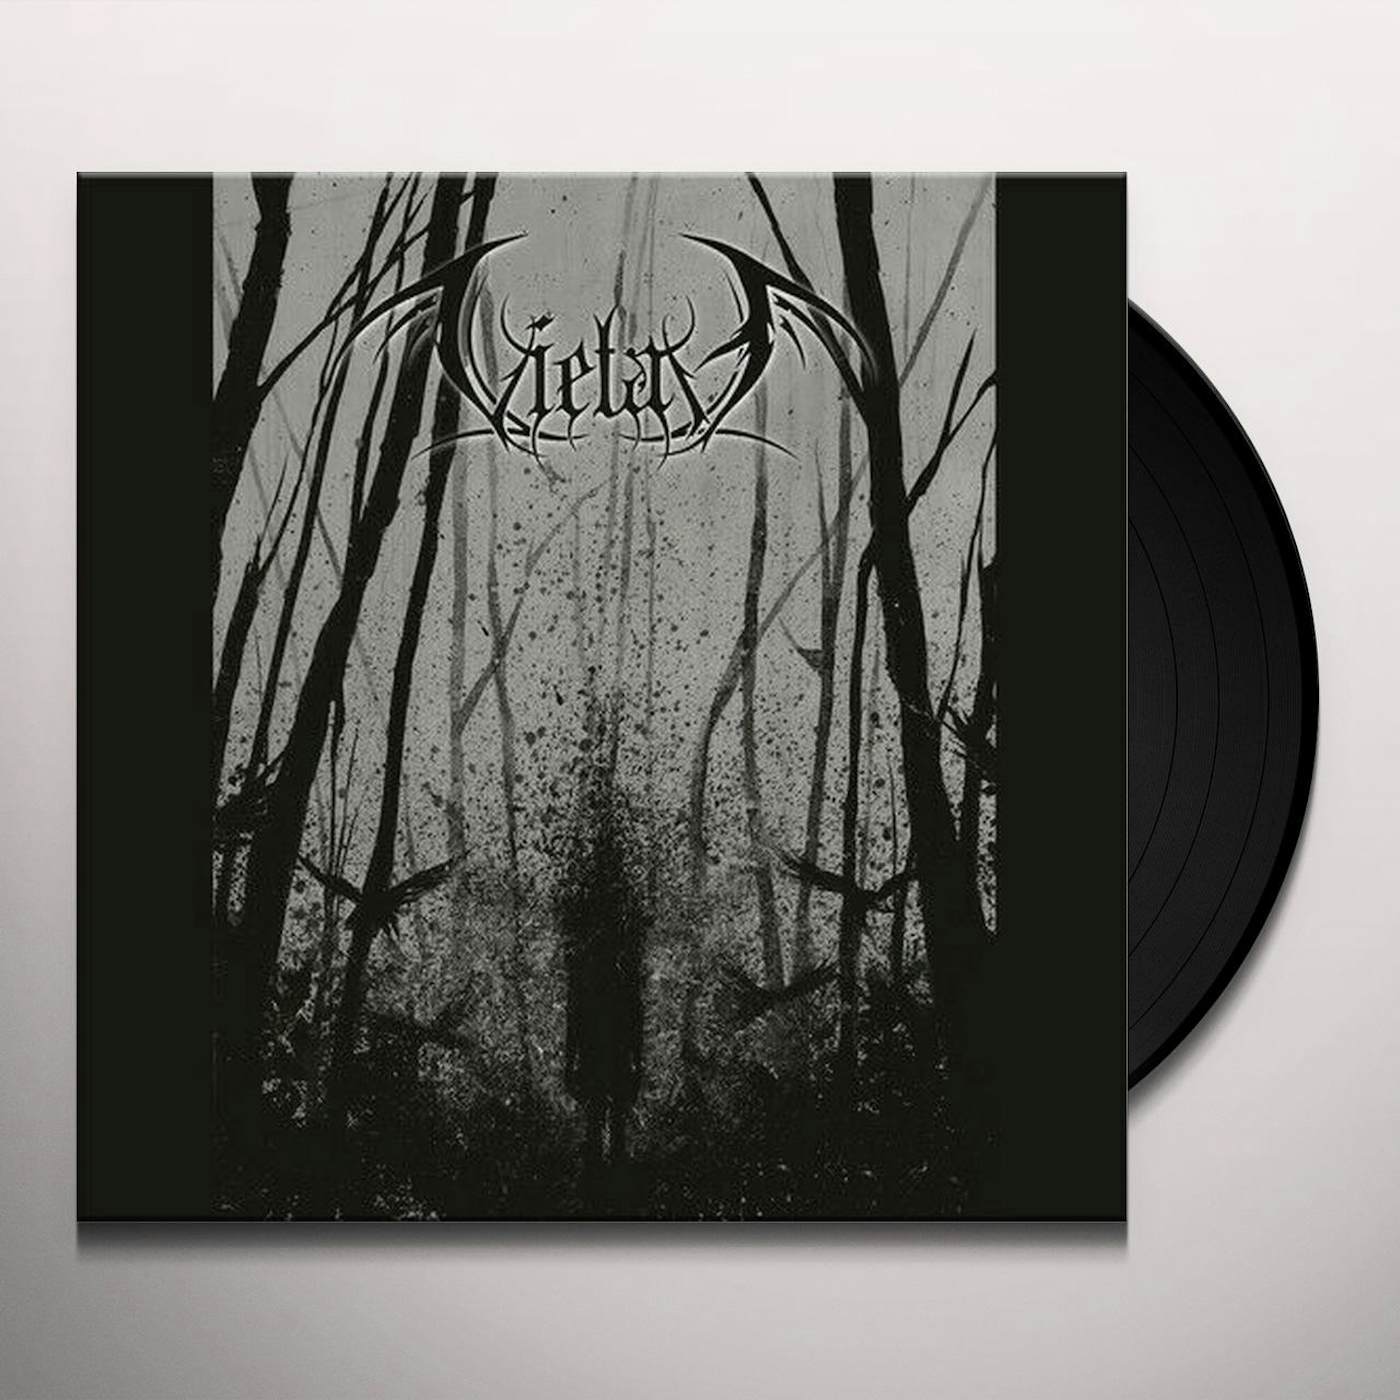 Vietah Czornaja Cvii Vinyl Record